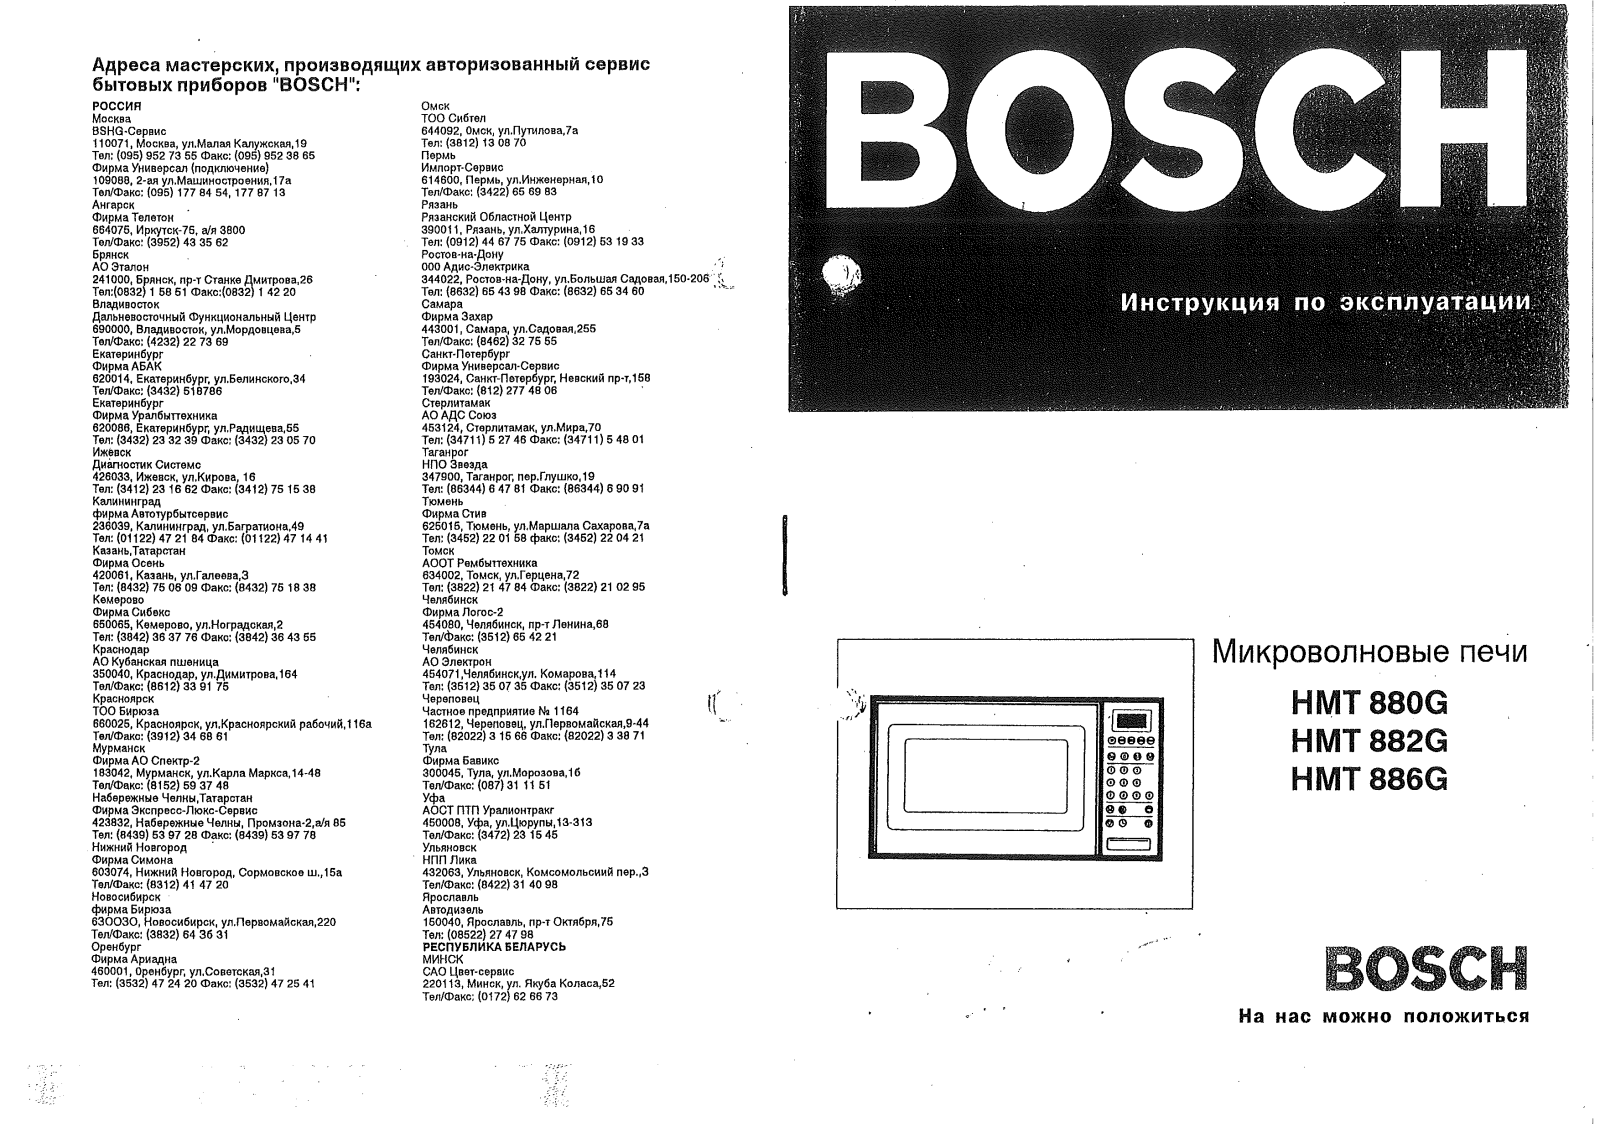 Bosch HMT 886G, HMT 882G User Manual